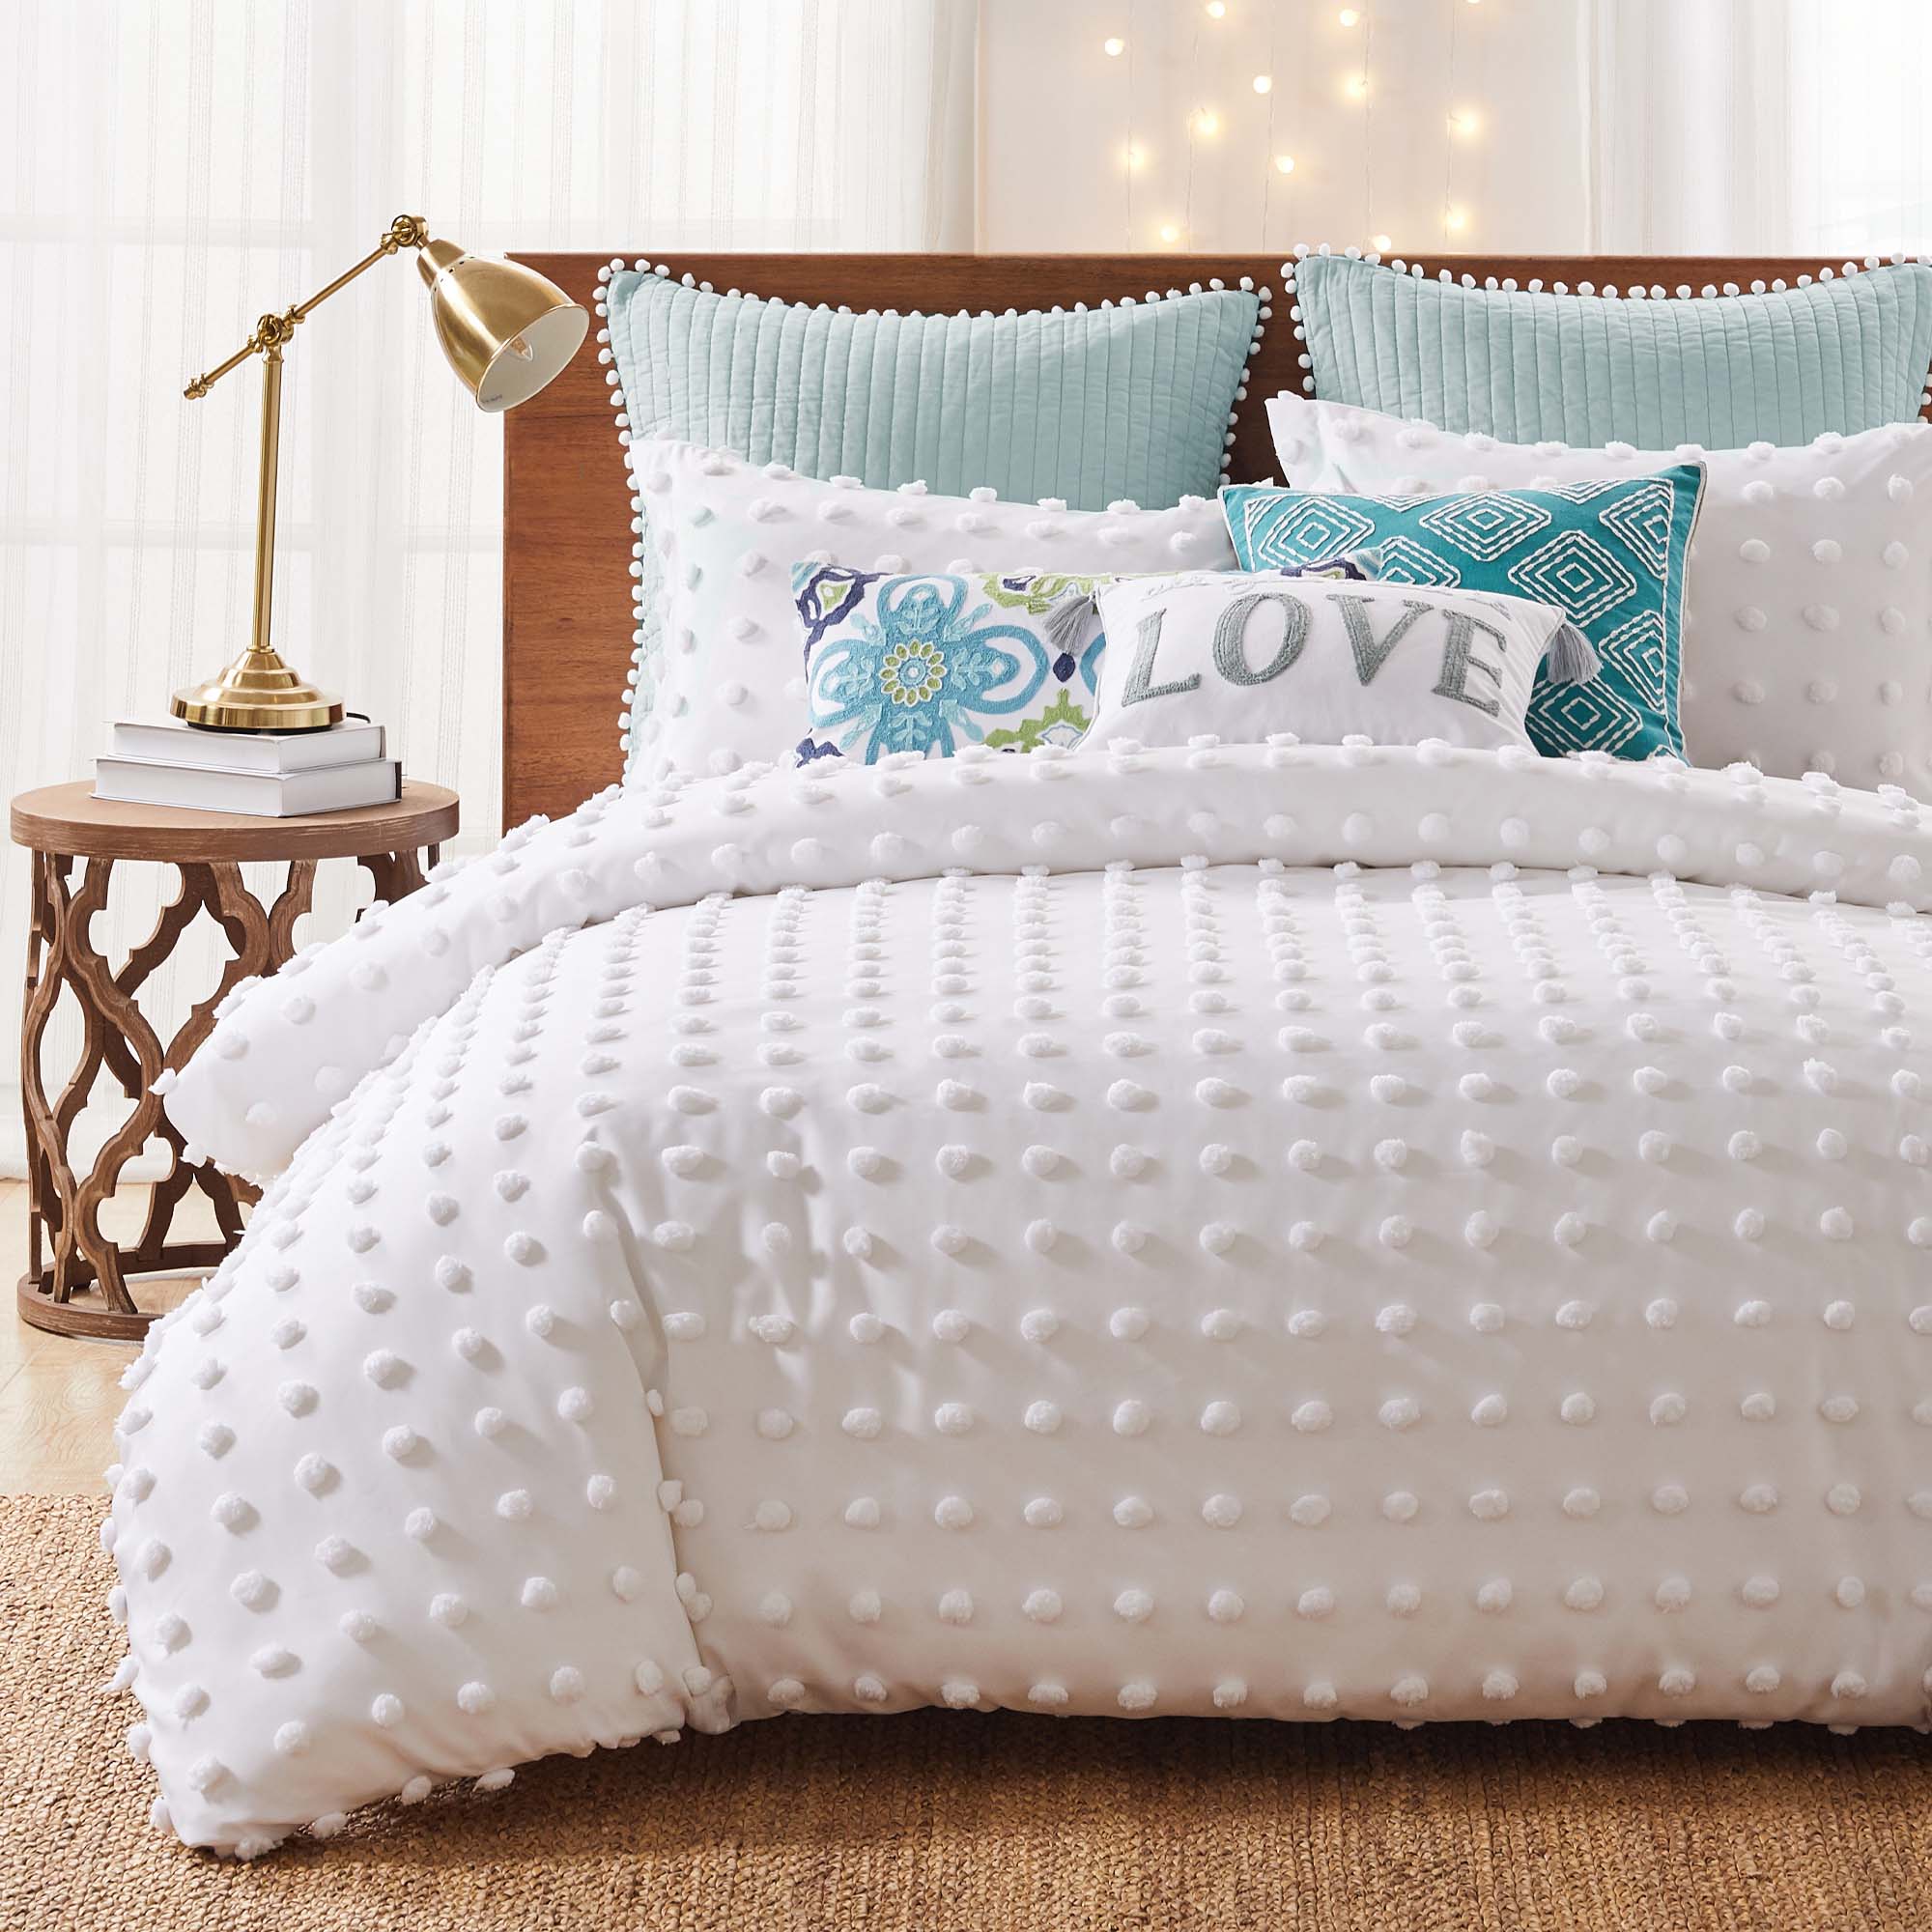  Levtex Home - Pickford Comforter Set - Twin Comforter